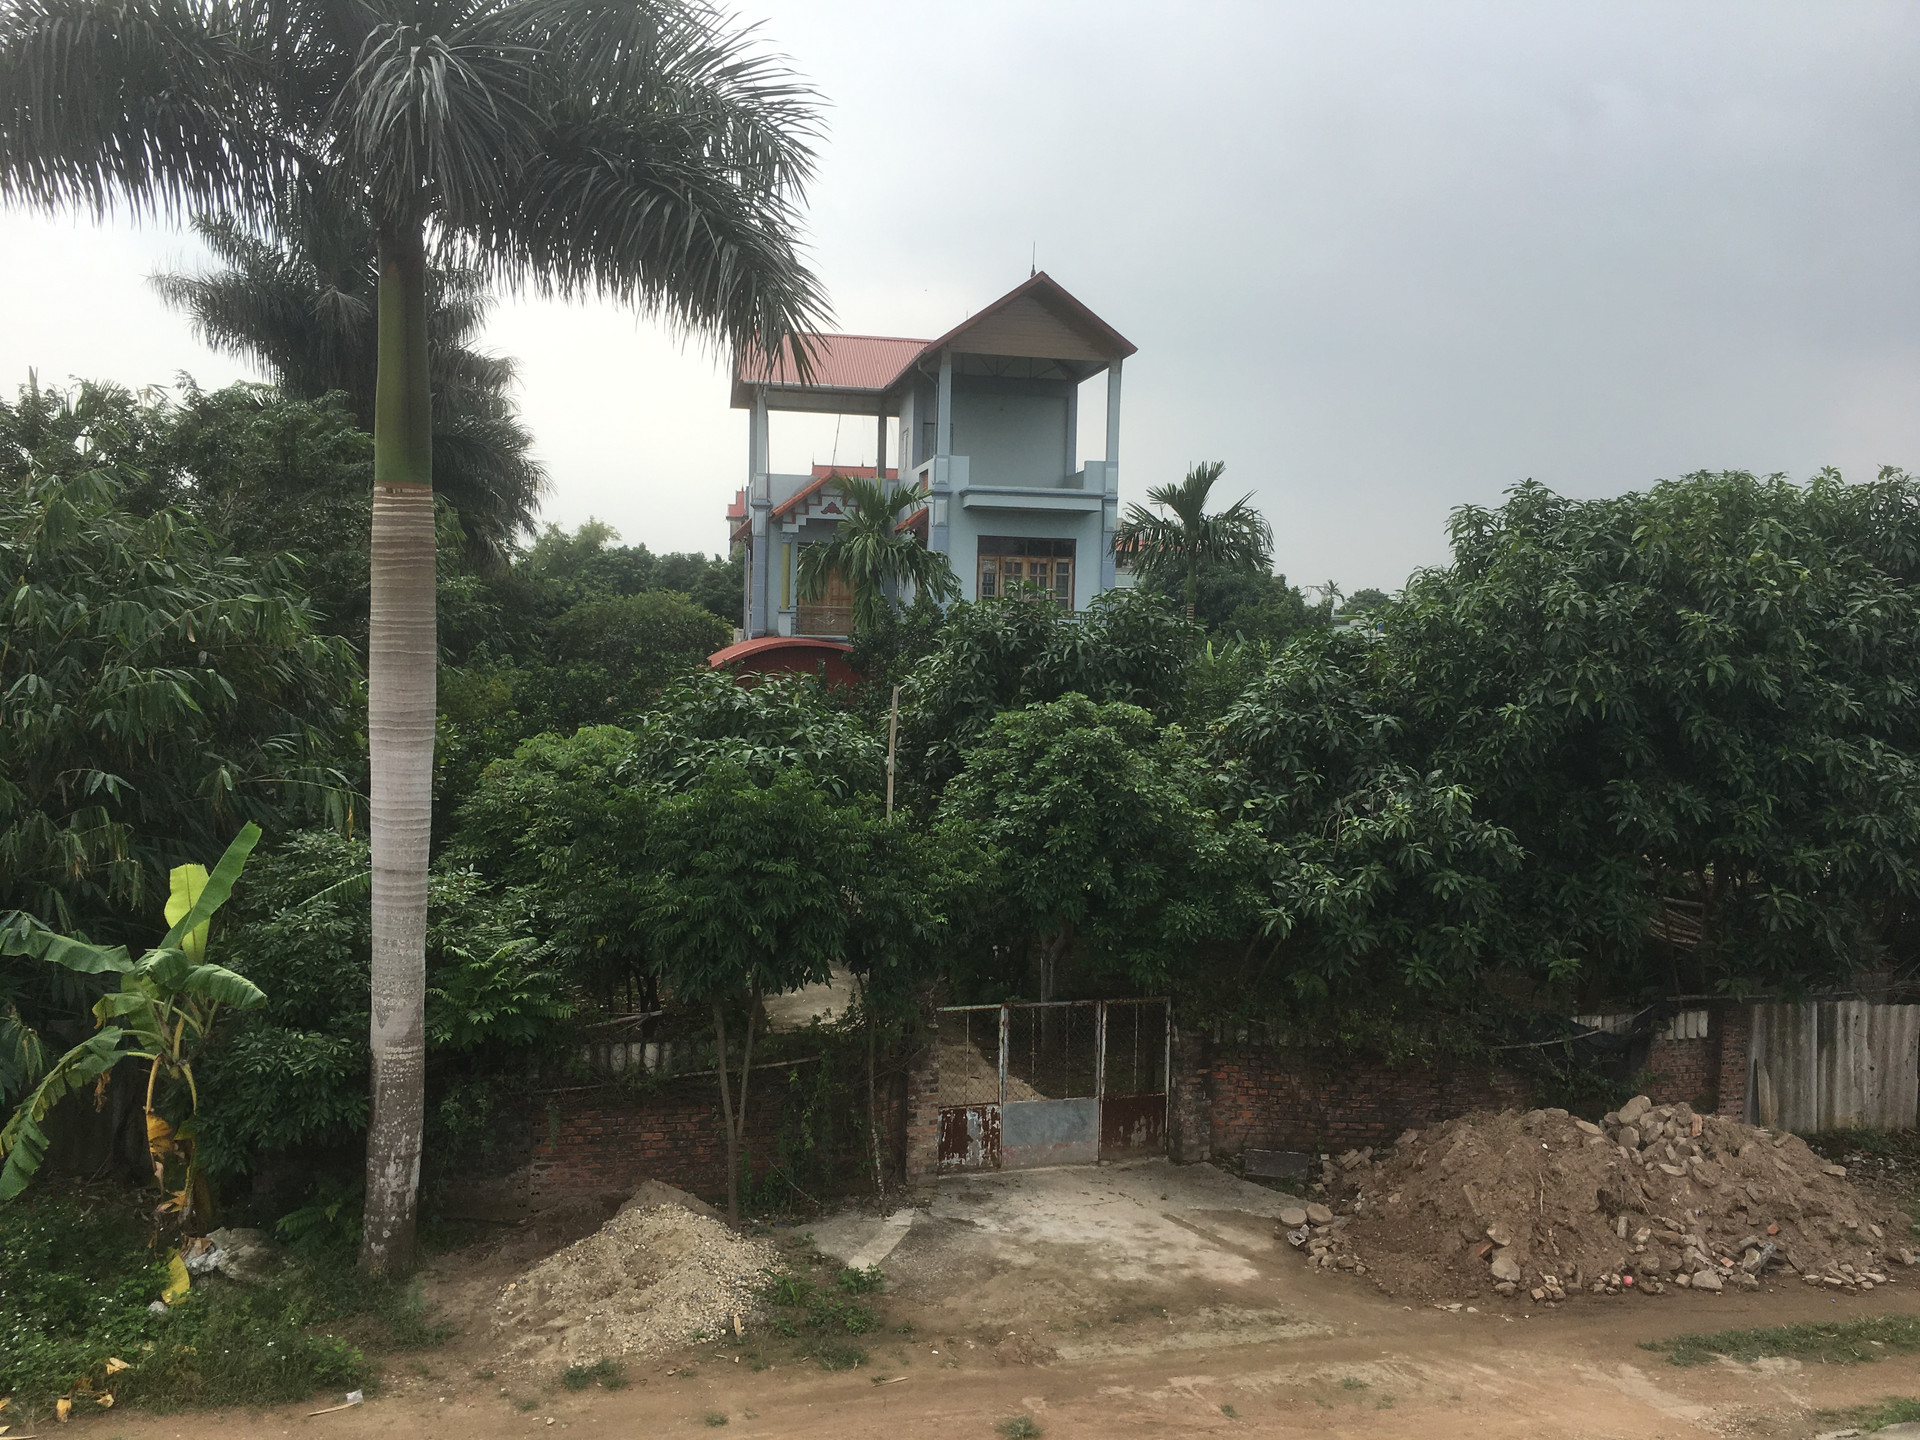 Vài trăm mét đất công bị ông Minh chiếm làm nhà ở mà không bị chính quyền xã Vĩnh Ngọc cưỡng chế.